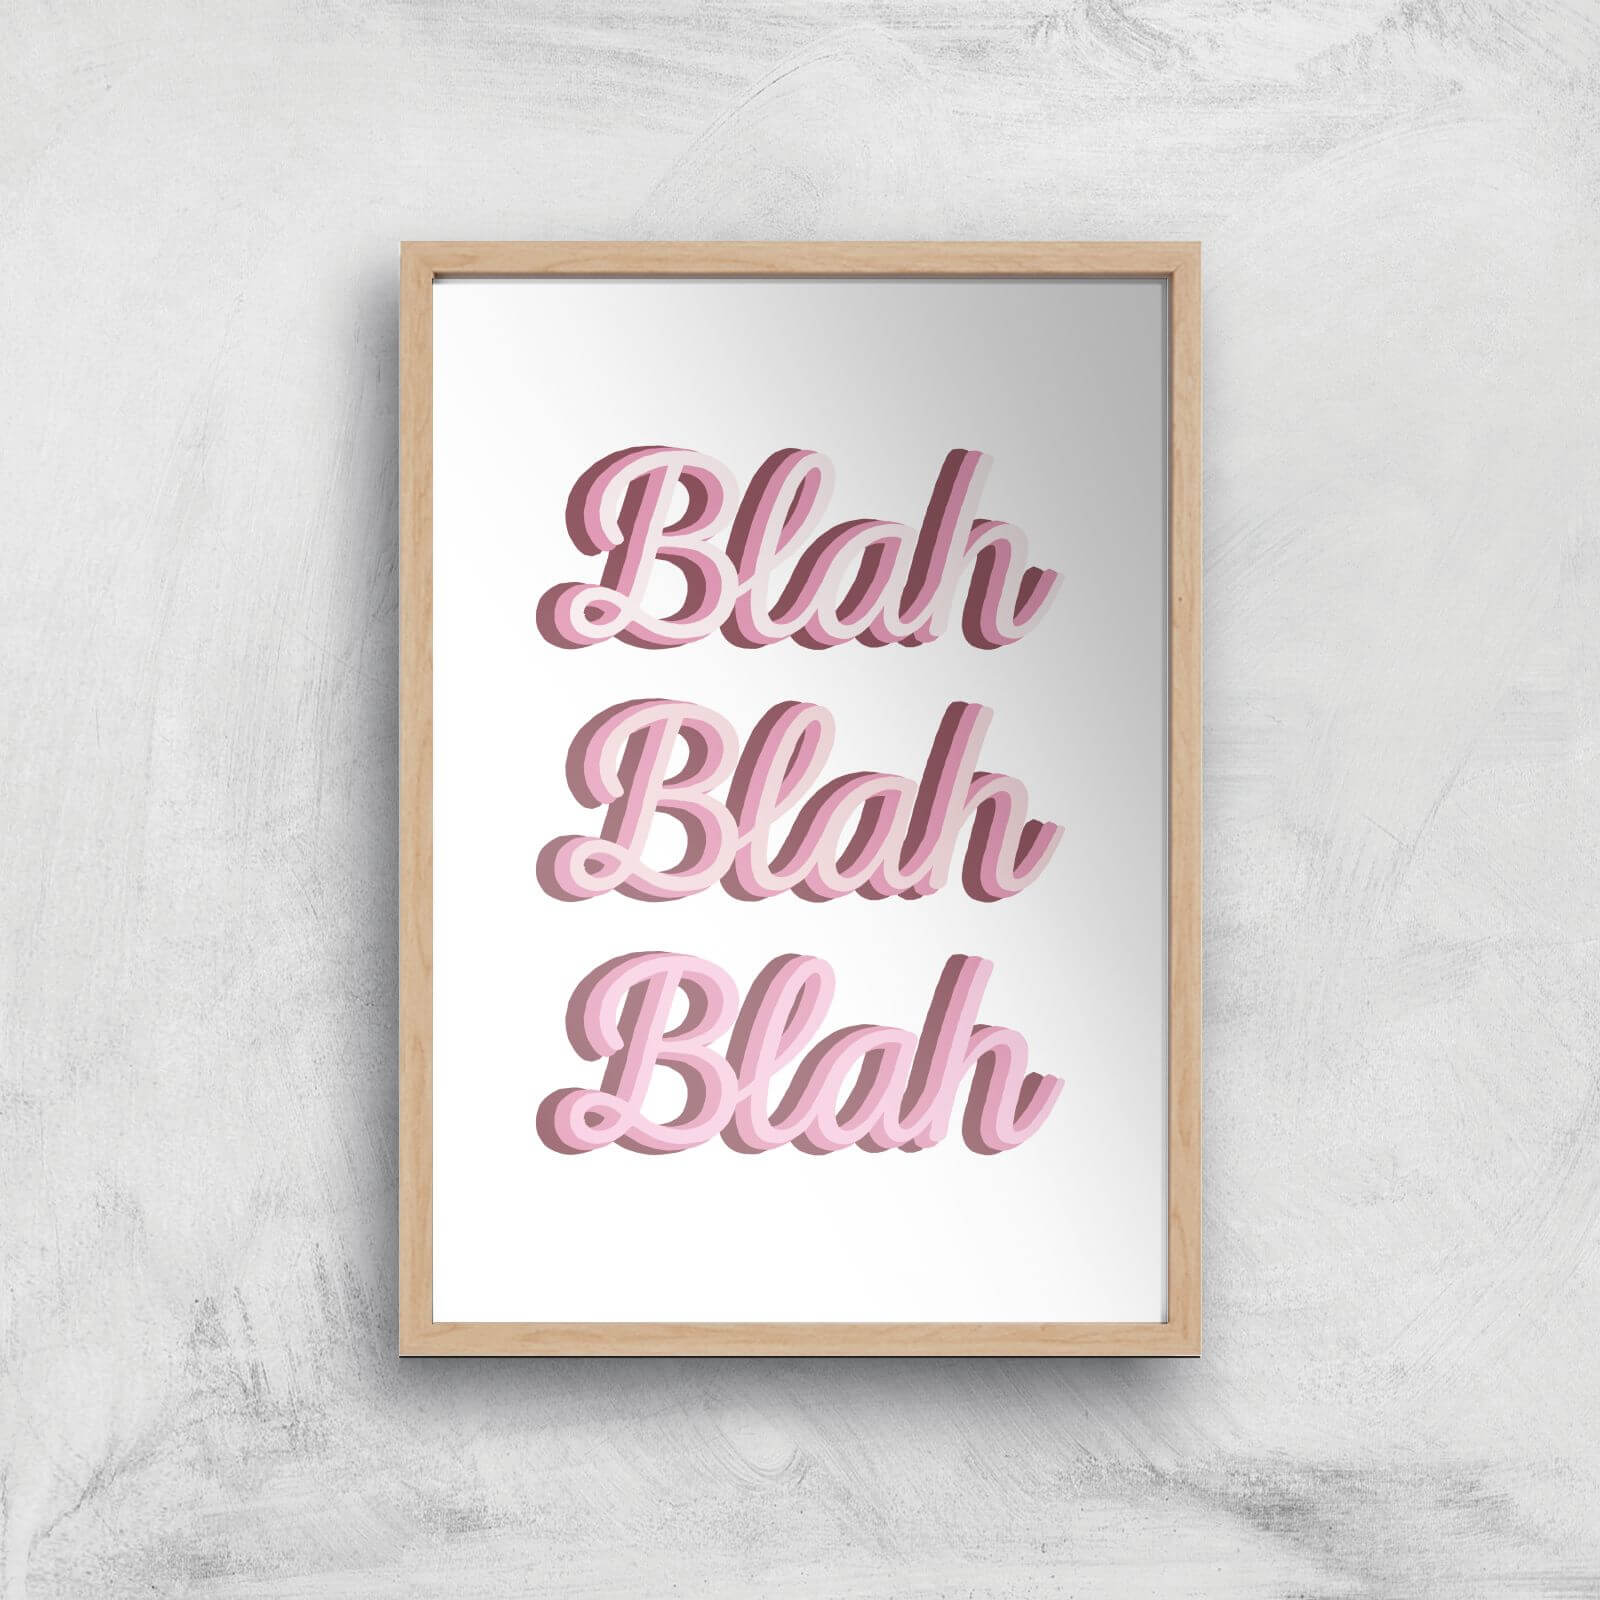 Blah Blah Blah Giclée Art Print - A4 - Wooden Frame